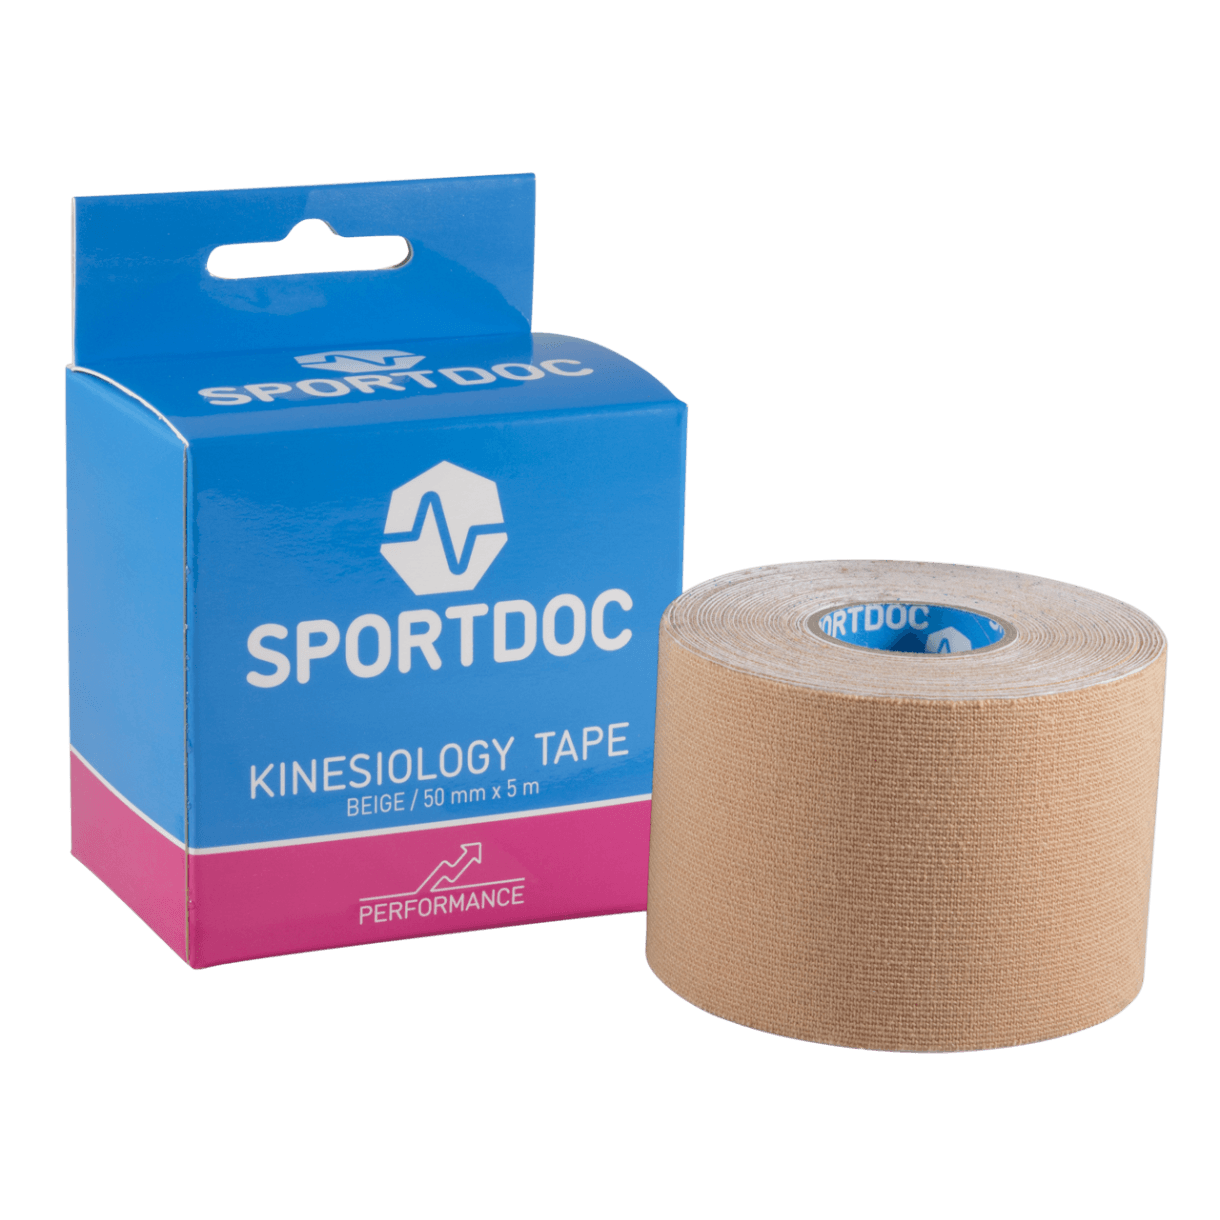 SPORTDOC KINESIOLOGY TAPE - Kinesiology tape - JA Profil 